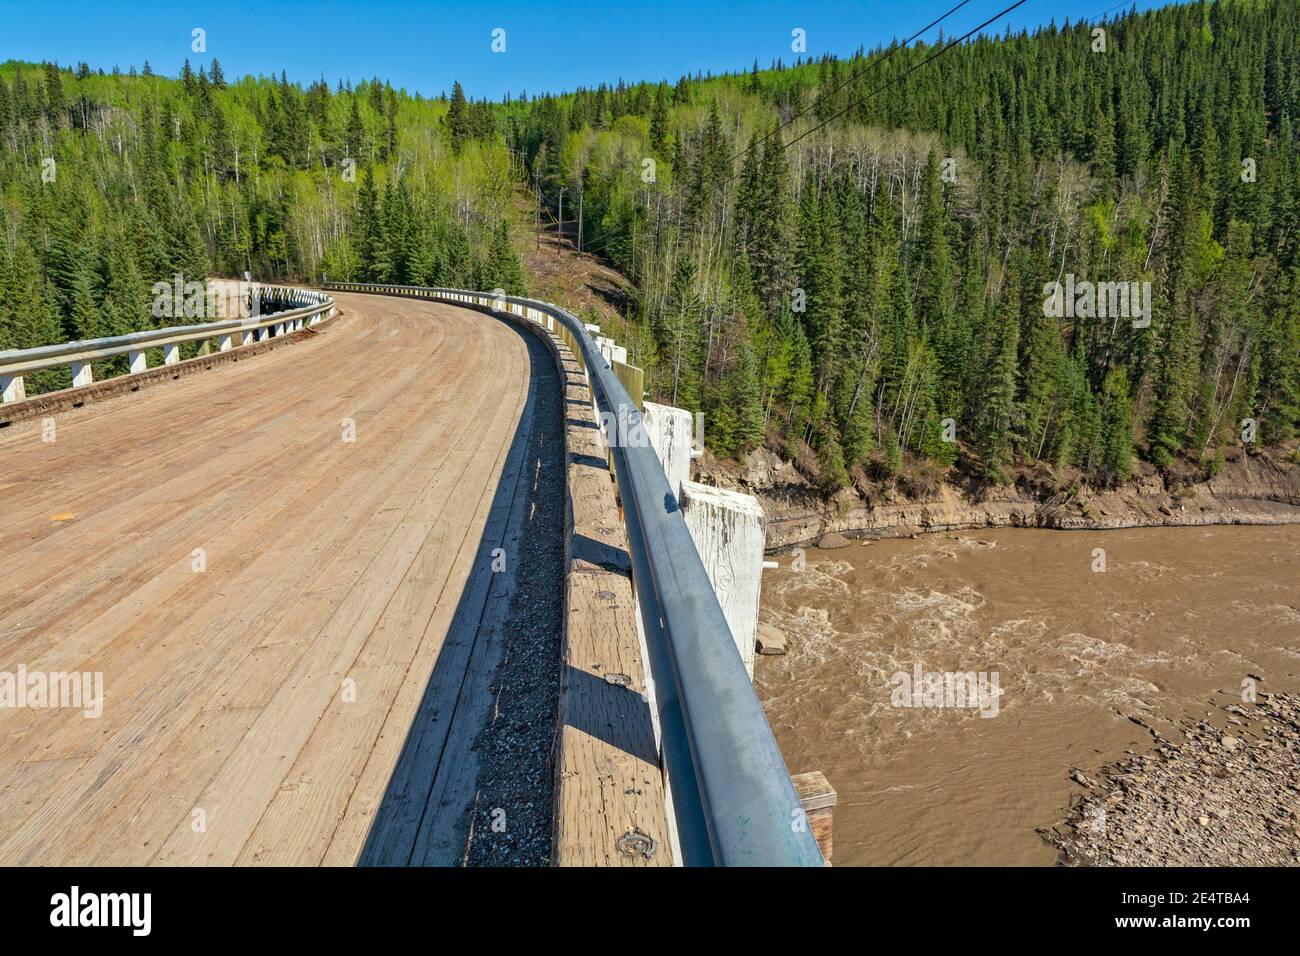 Canada, Colombie-Britannique, Old Alaska Highway, pont courbe Kiskatinaw construit en 1942-43 au point milliaire 21 Banque D'Images